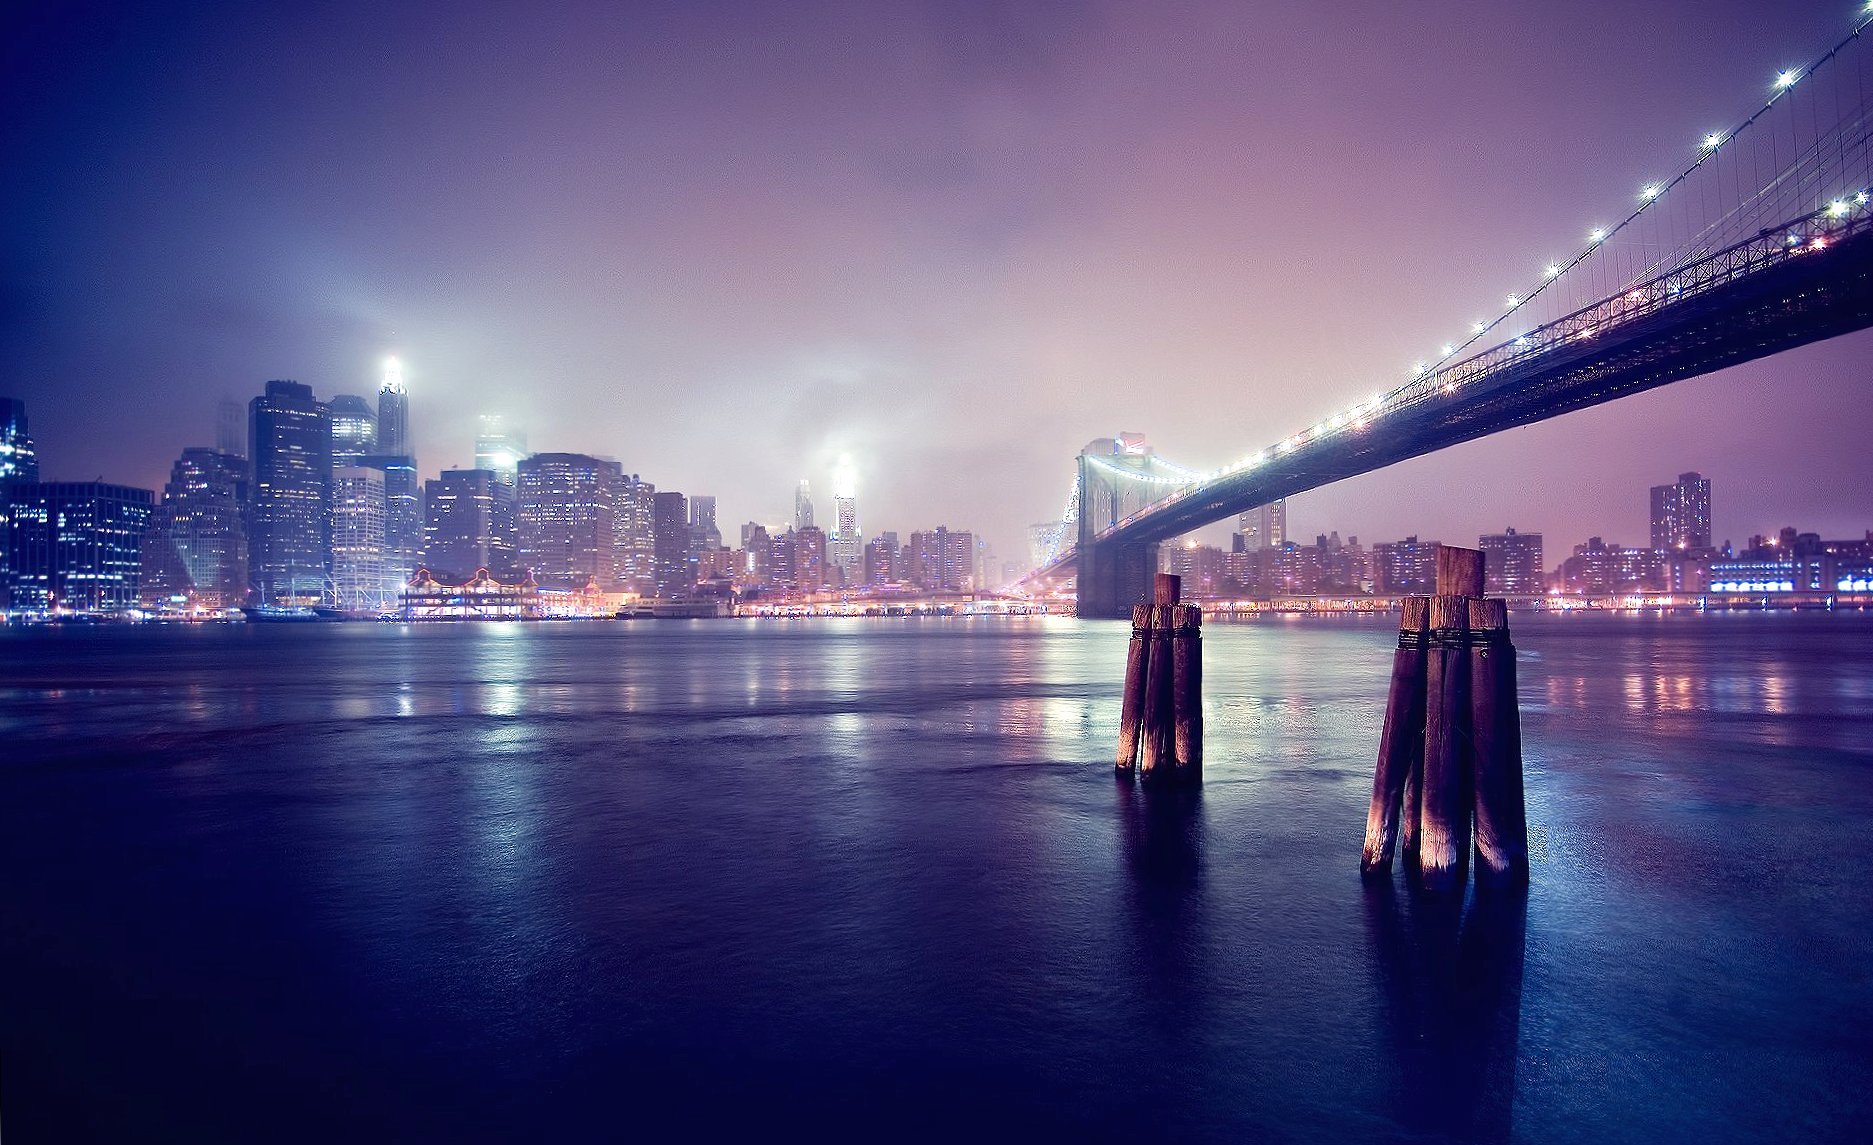 Night brooklyn bridge new york at 2048 x 2048 iPad size wallpapers HD quality